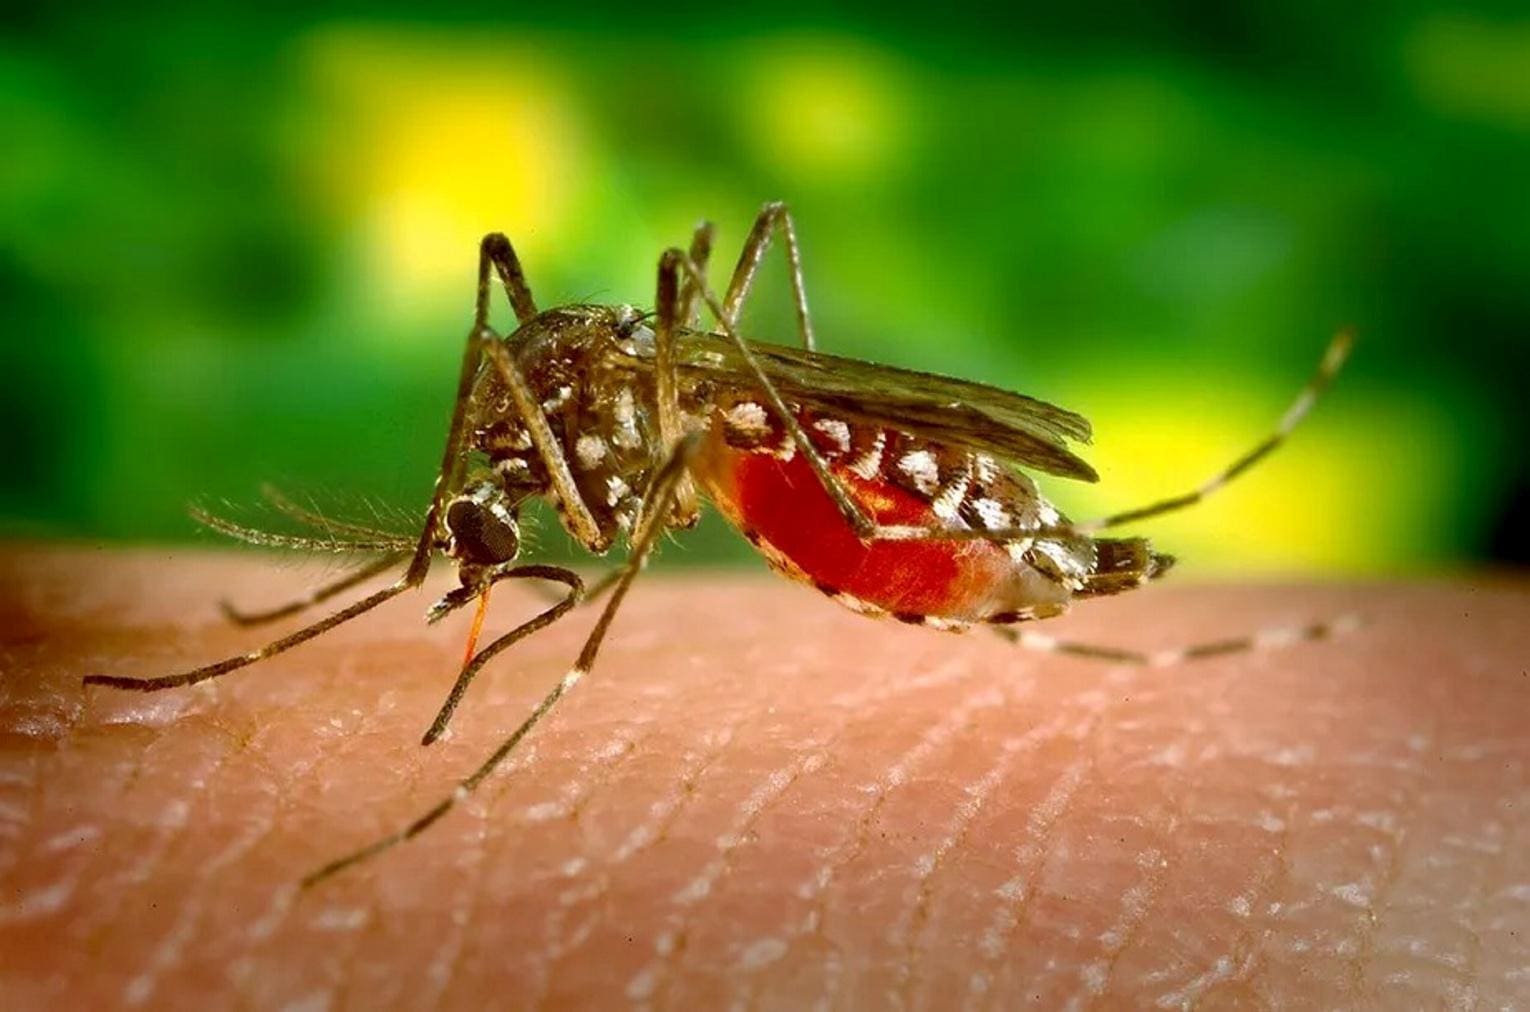 MG tem recorde de infecção rara de dengue e chikungunya ao mesmo tempo; entenda - Jornal O Popular